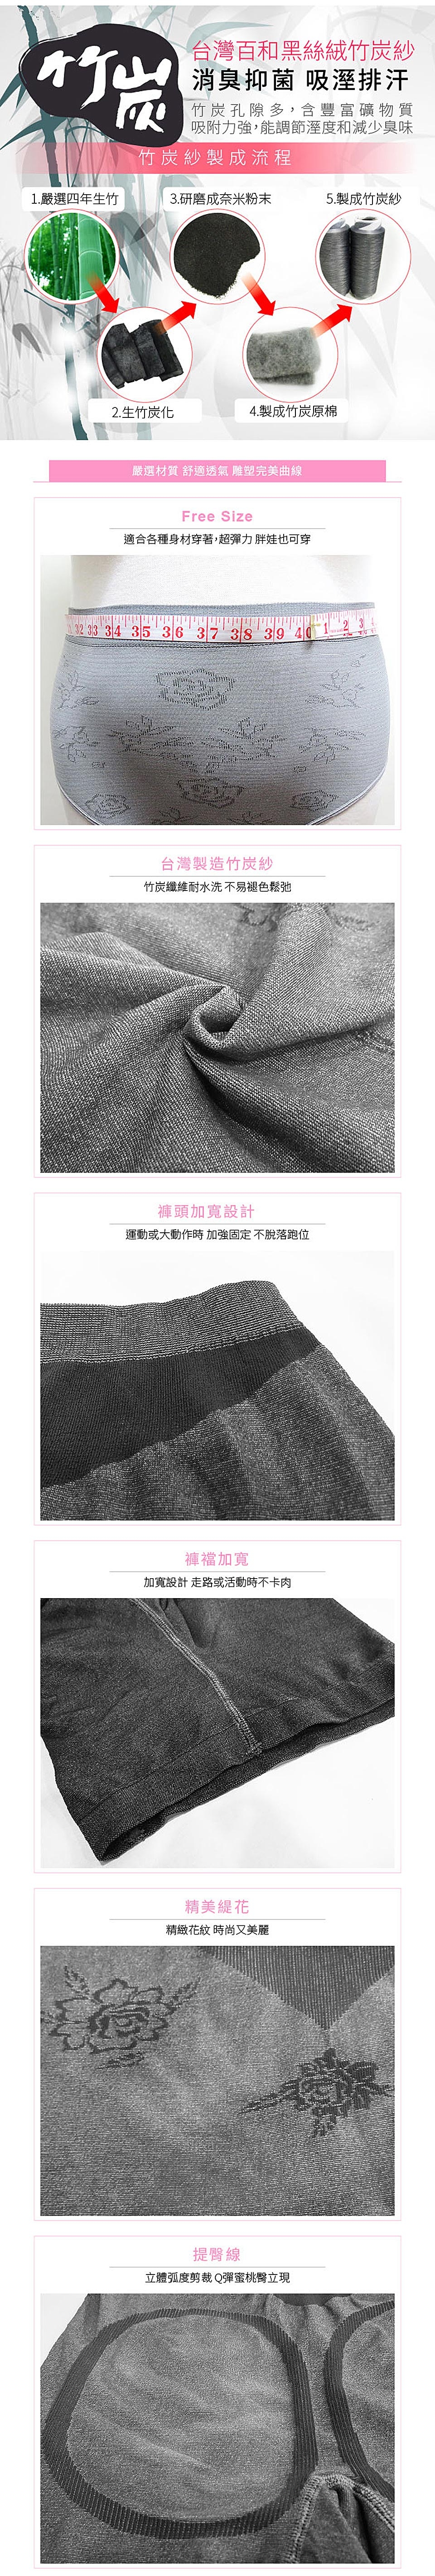 【Yi-sheng】台灣製竹炭機能中腰無縫褲秒殺8件組